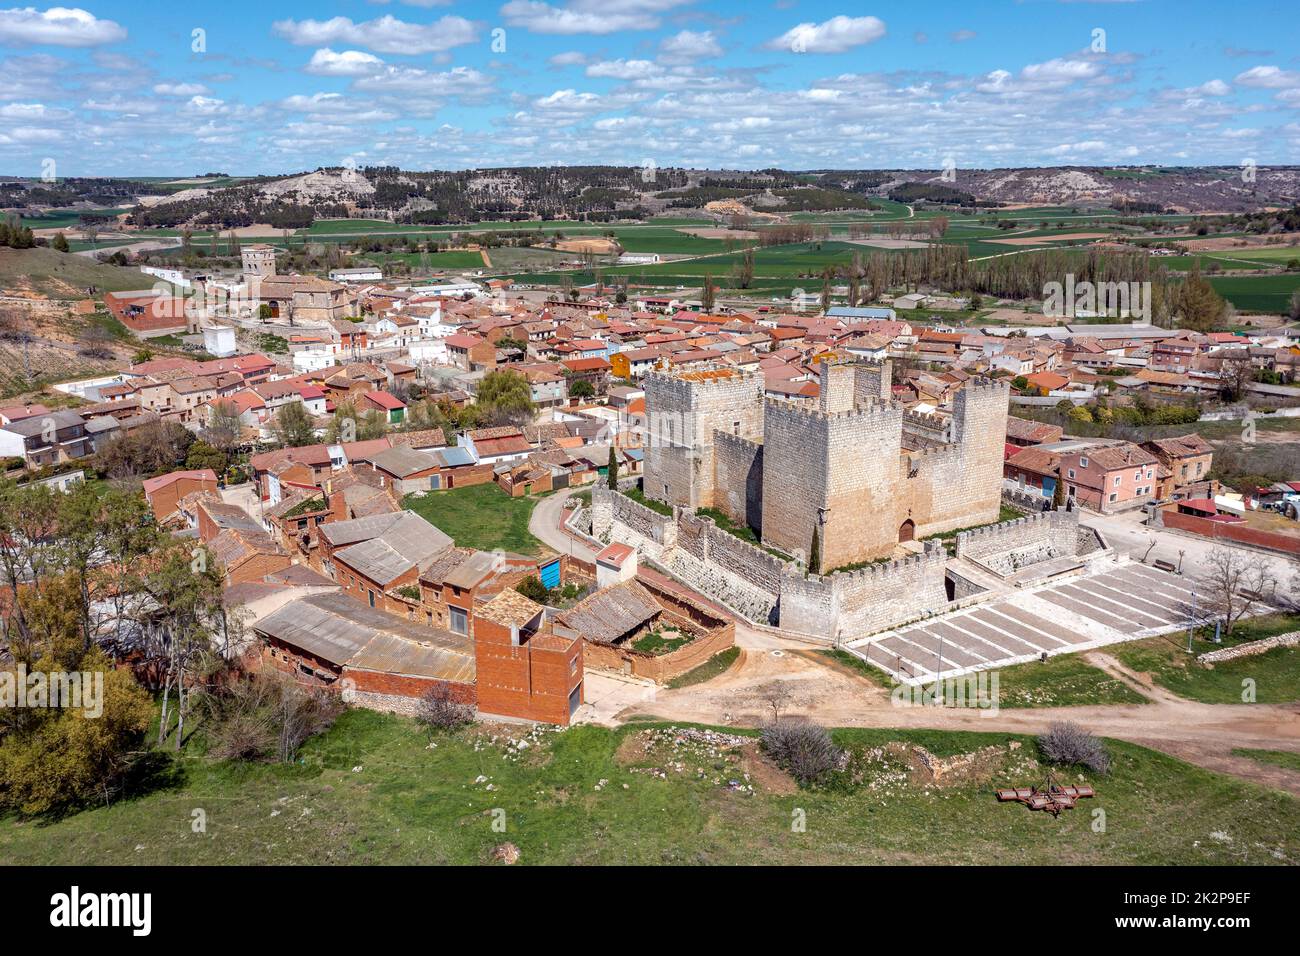 Vista panorámica de Encinas de Esgueva, es un municipio de la provincia de Valladolid, en la Comunidad Autónoma de Castilla y León. Foto de stock